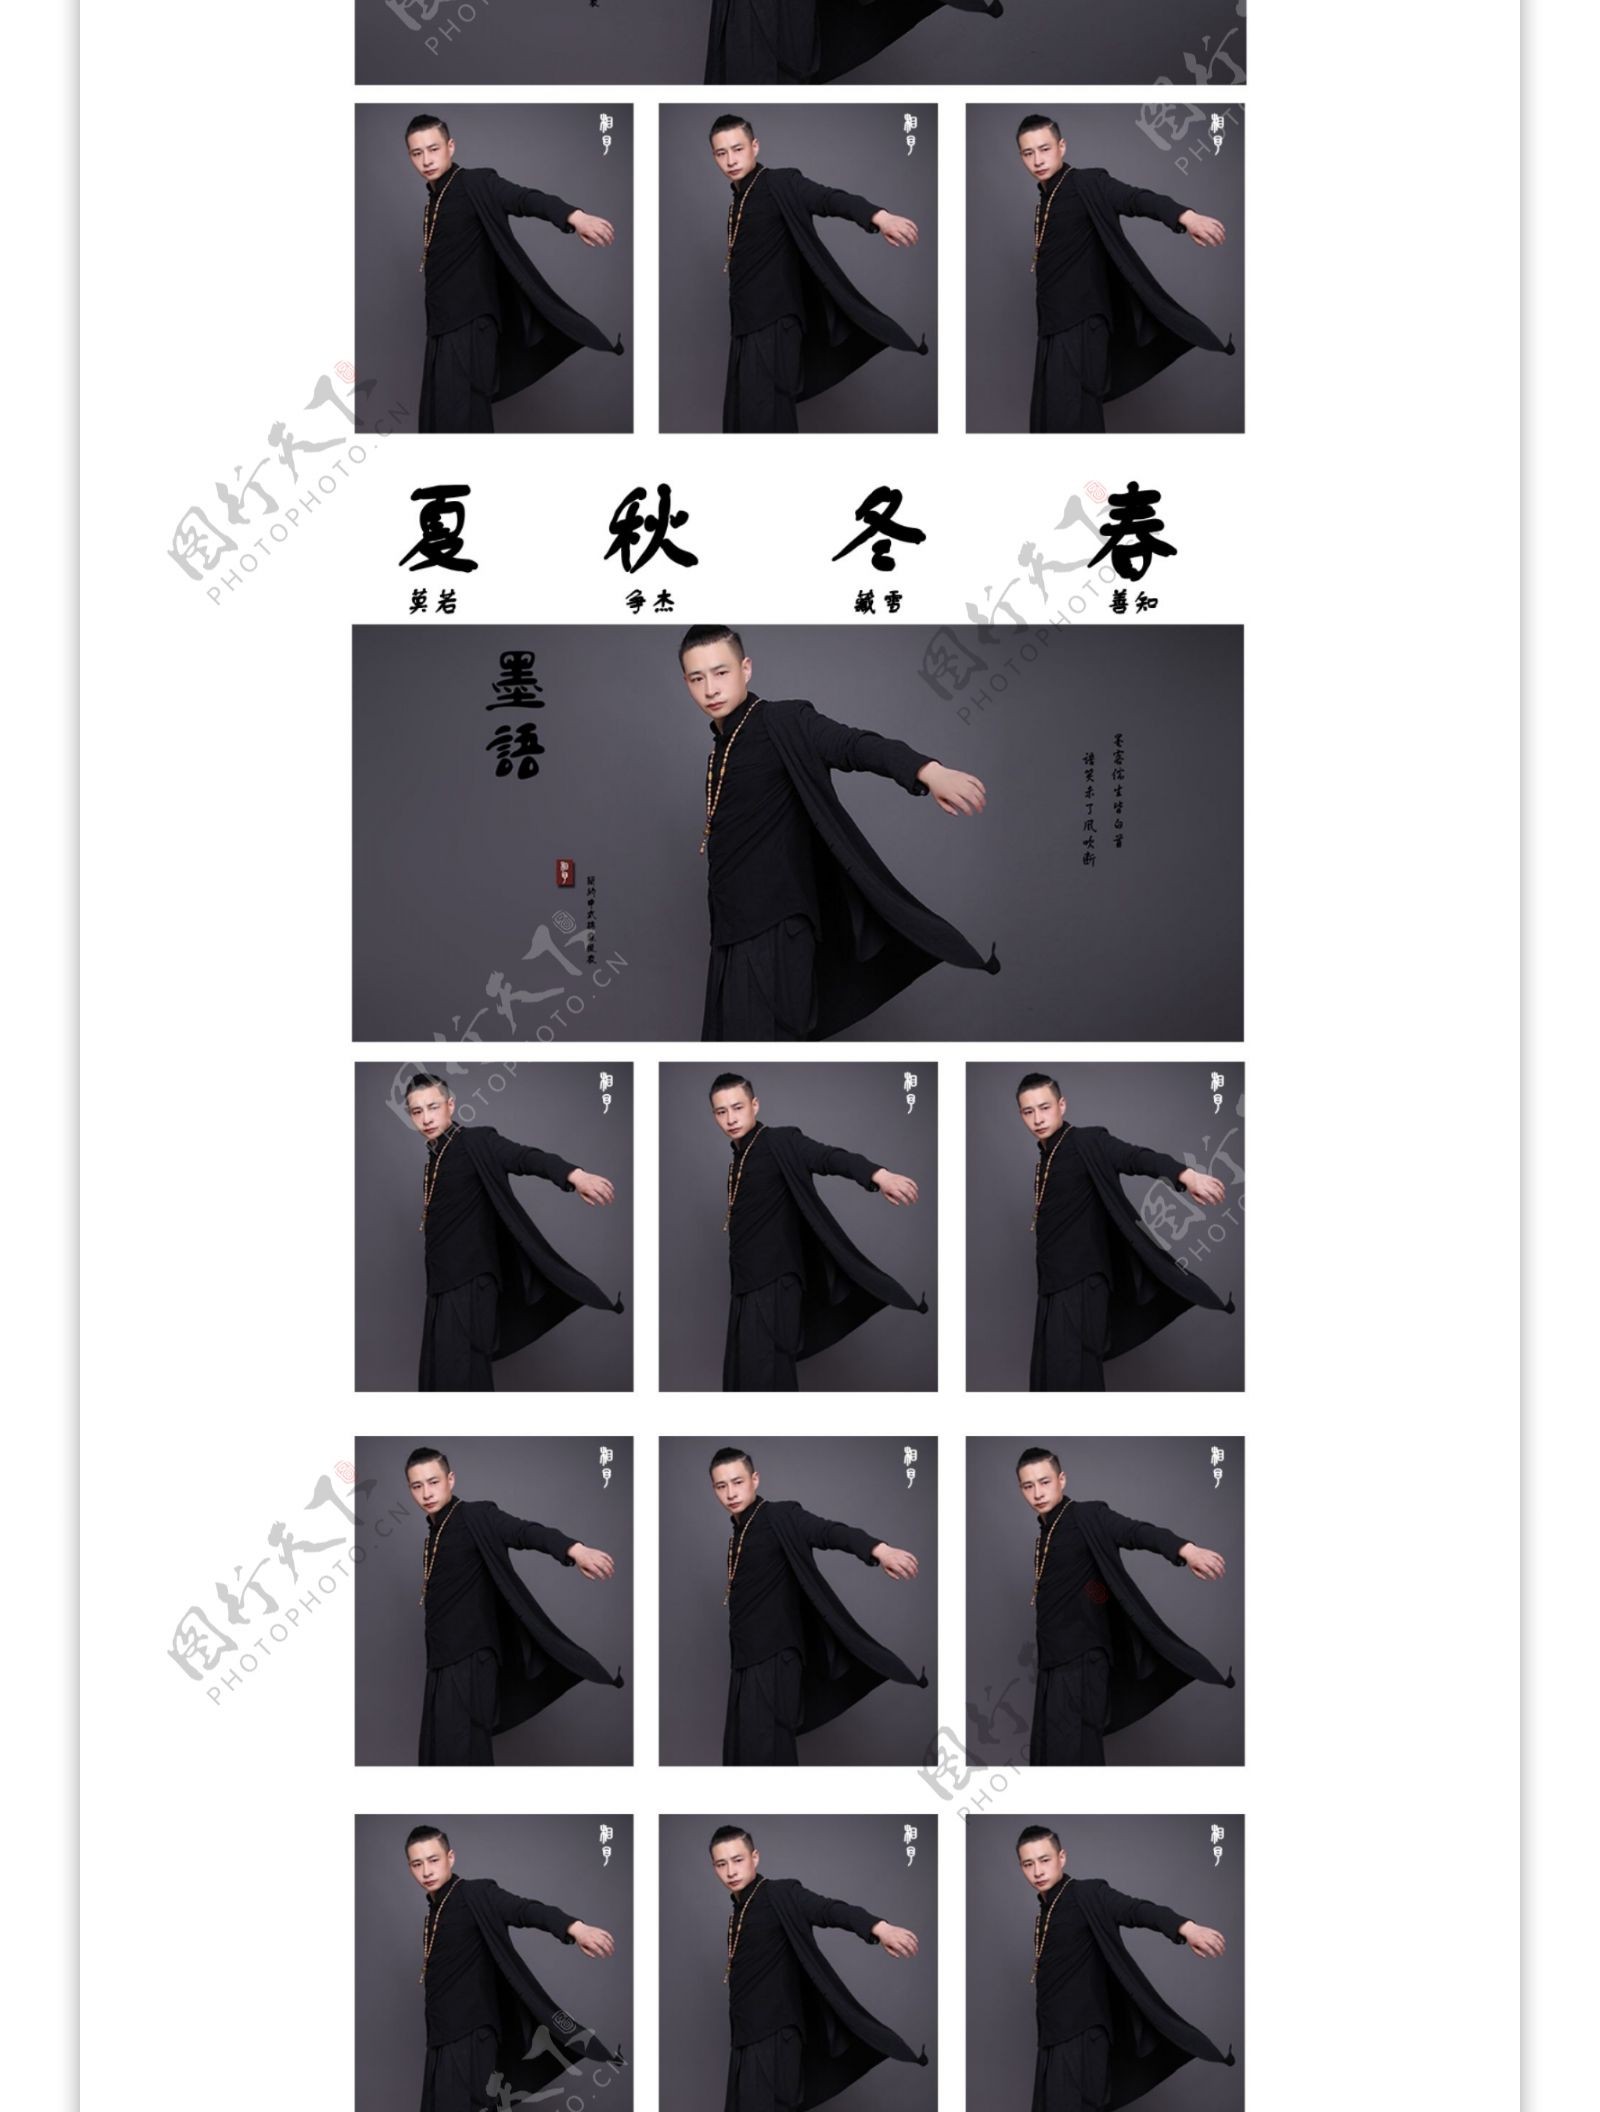 中国风男装简单排版